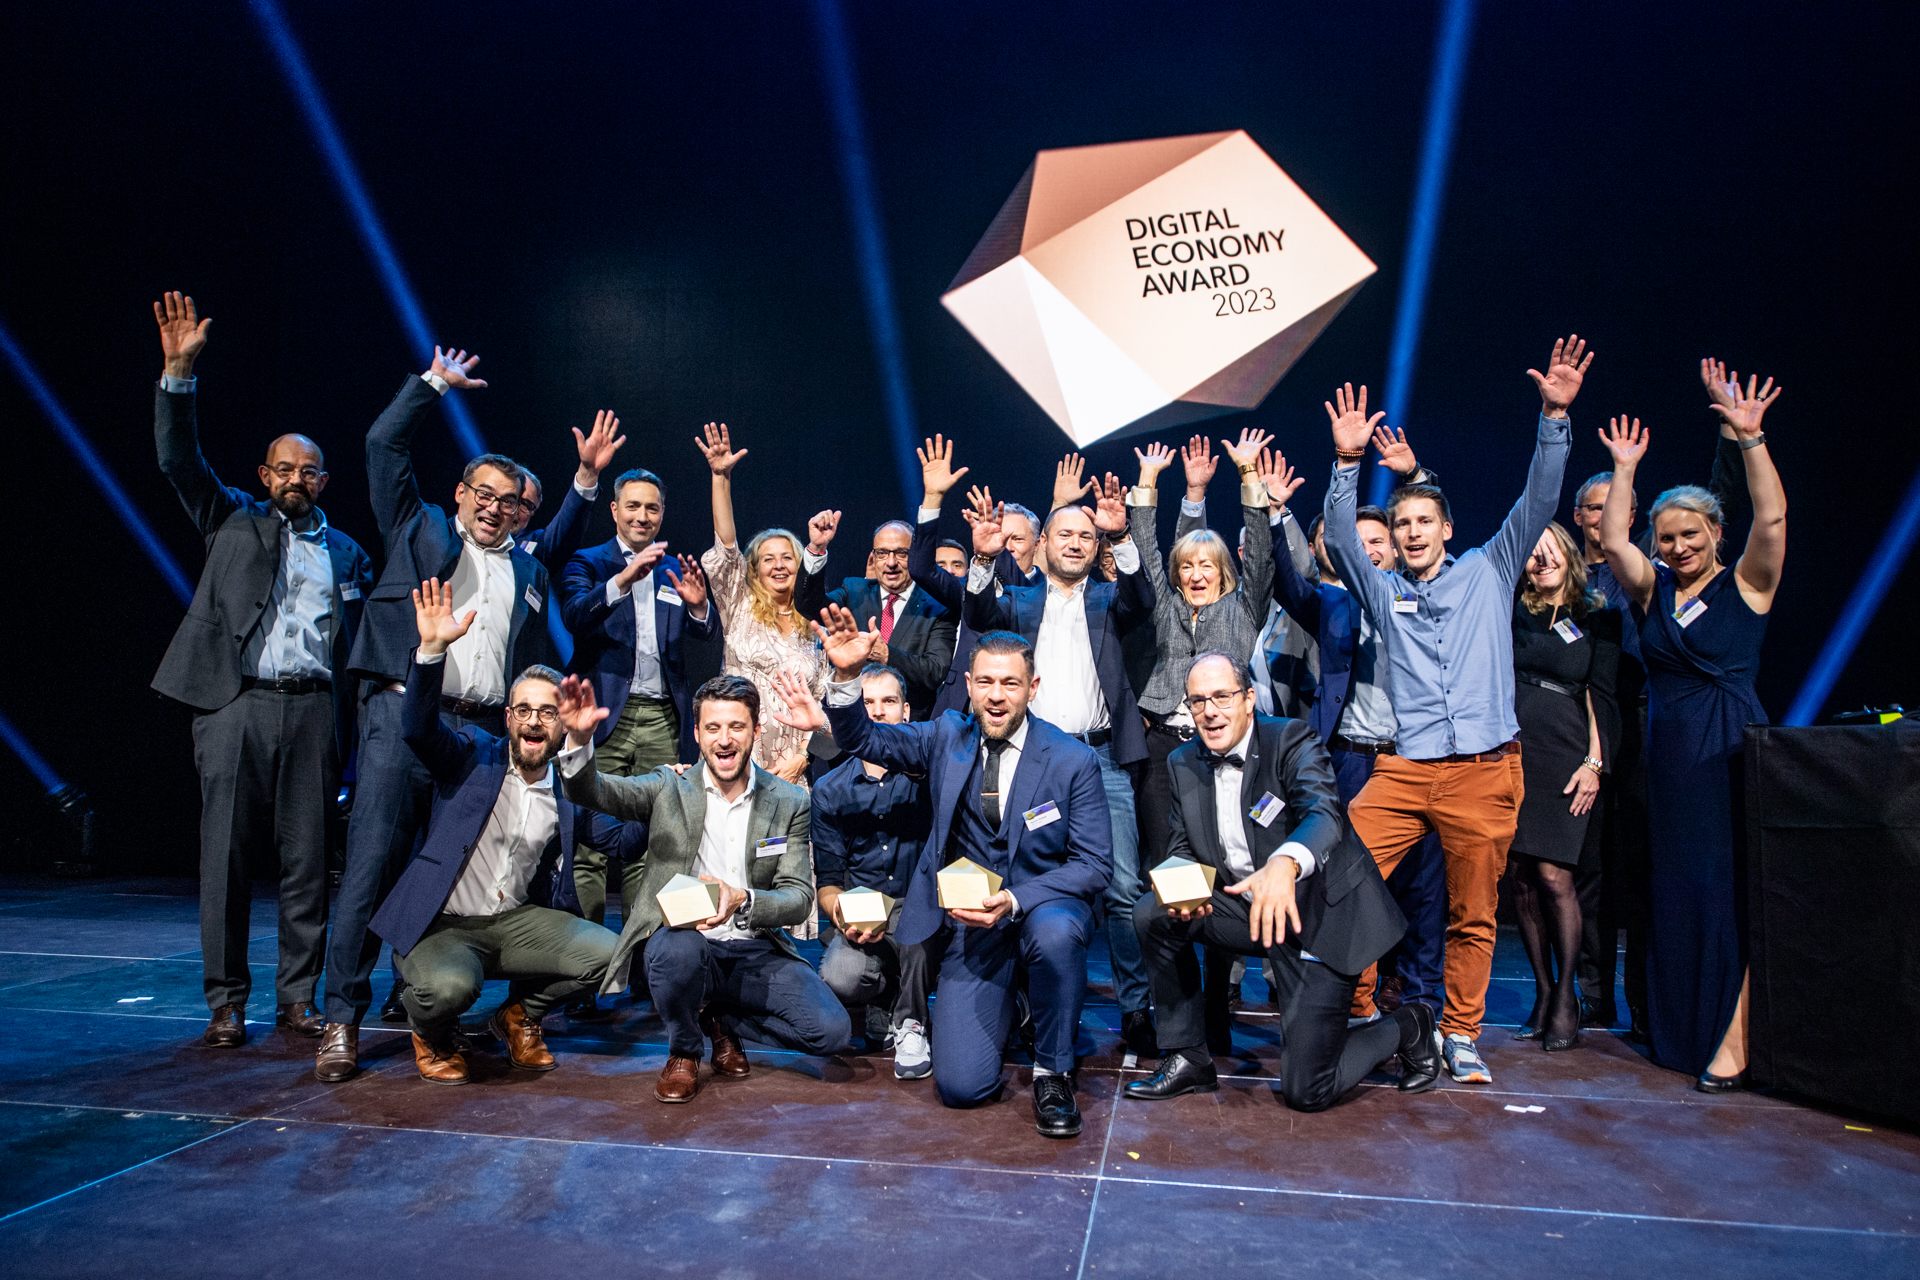 數位經濟獎：2023 年獎項頒獎典禮於 16 月 XNUMX 日在瑞士蘇黎世 Hallenstadion 舉行